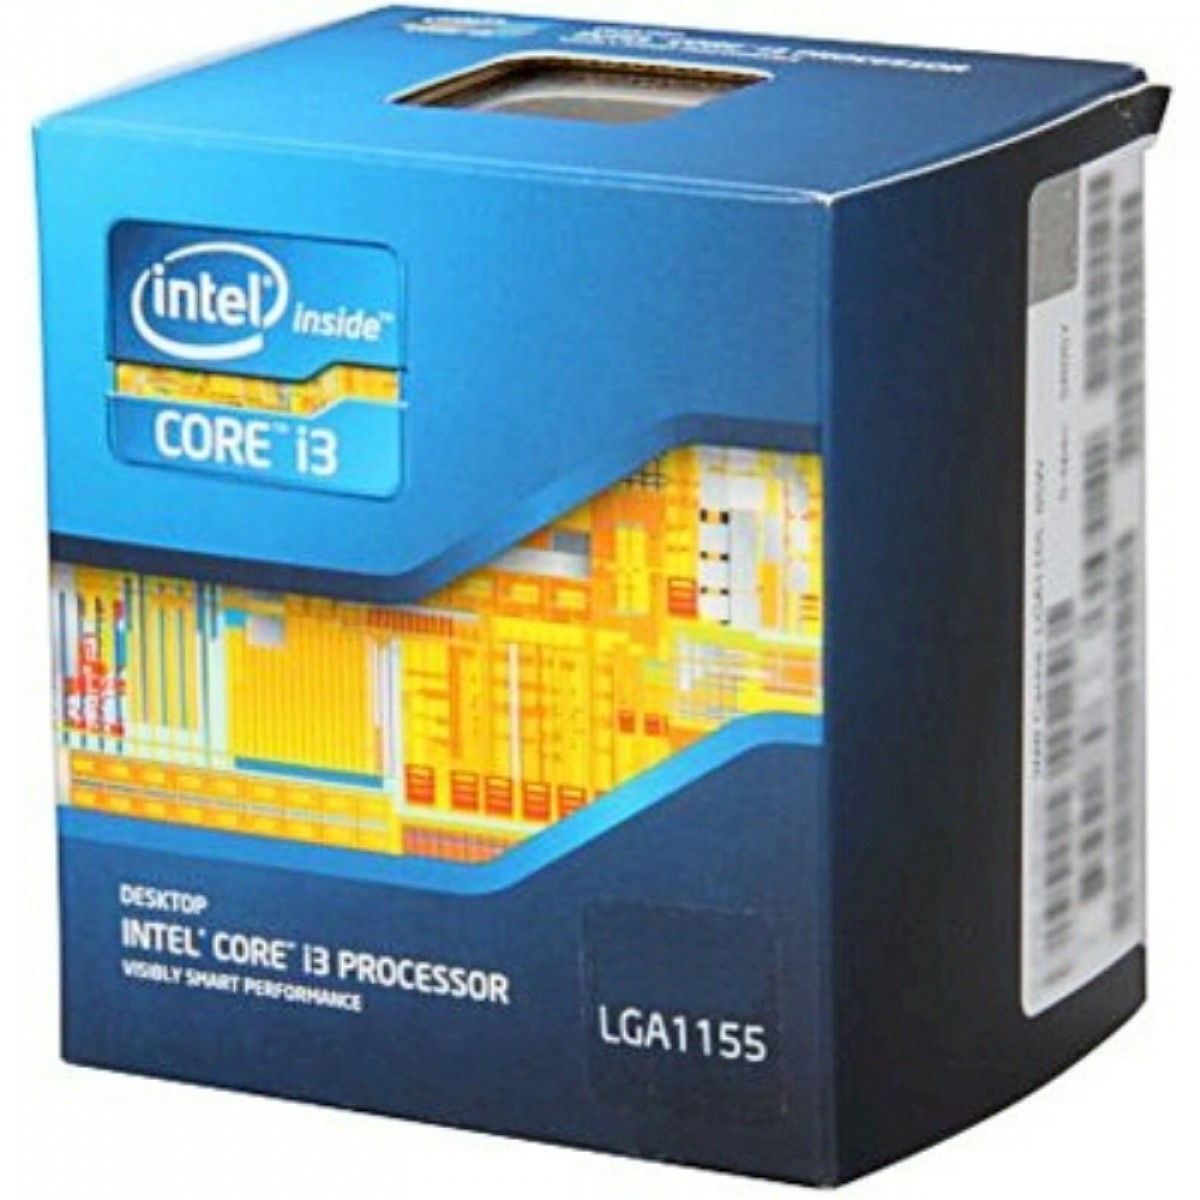 Processador Intel Core i3 3220 3.30GHz, 3MB, 2-Cores 4-Threads, LGA 1155